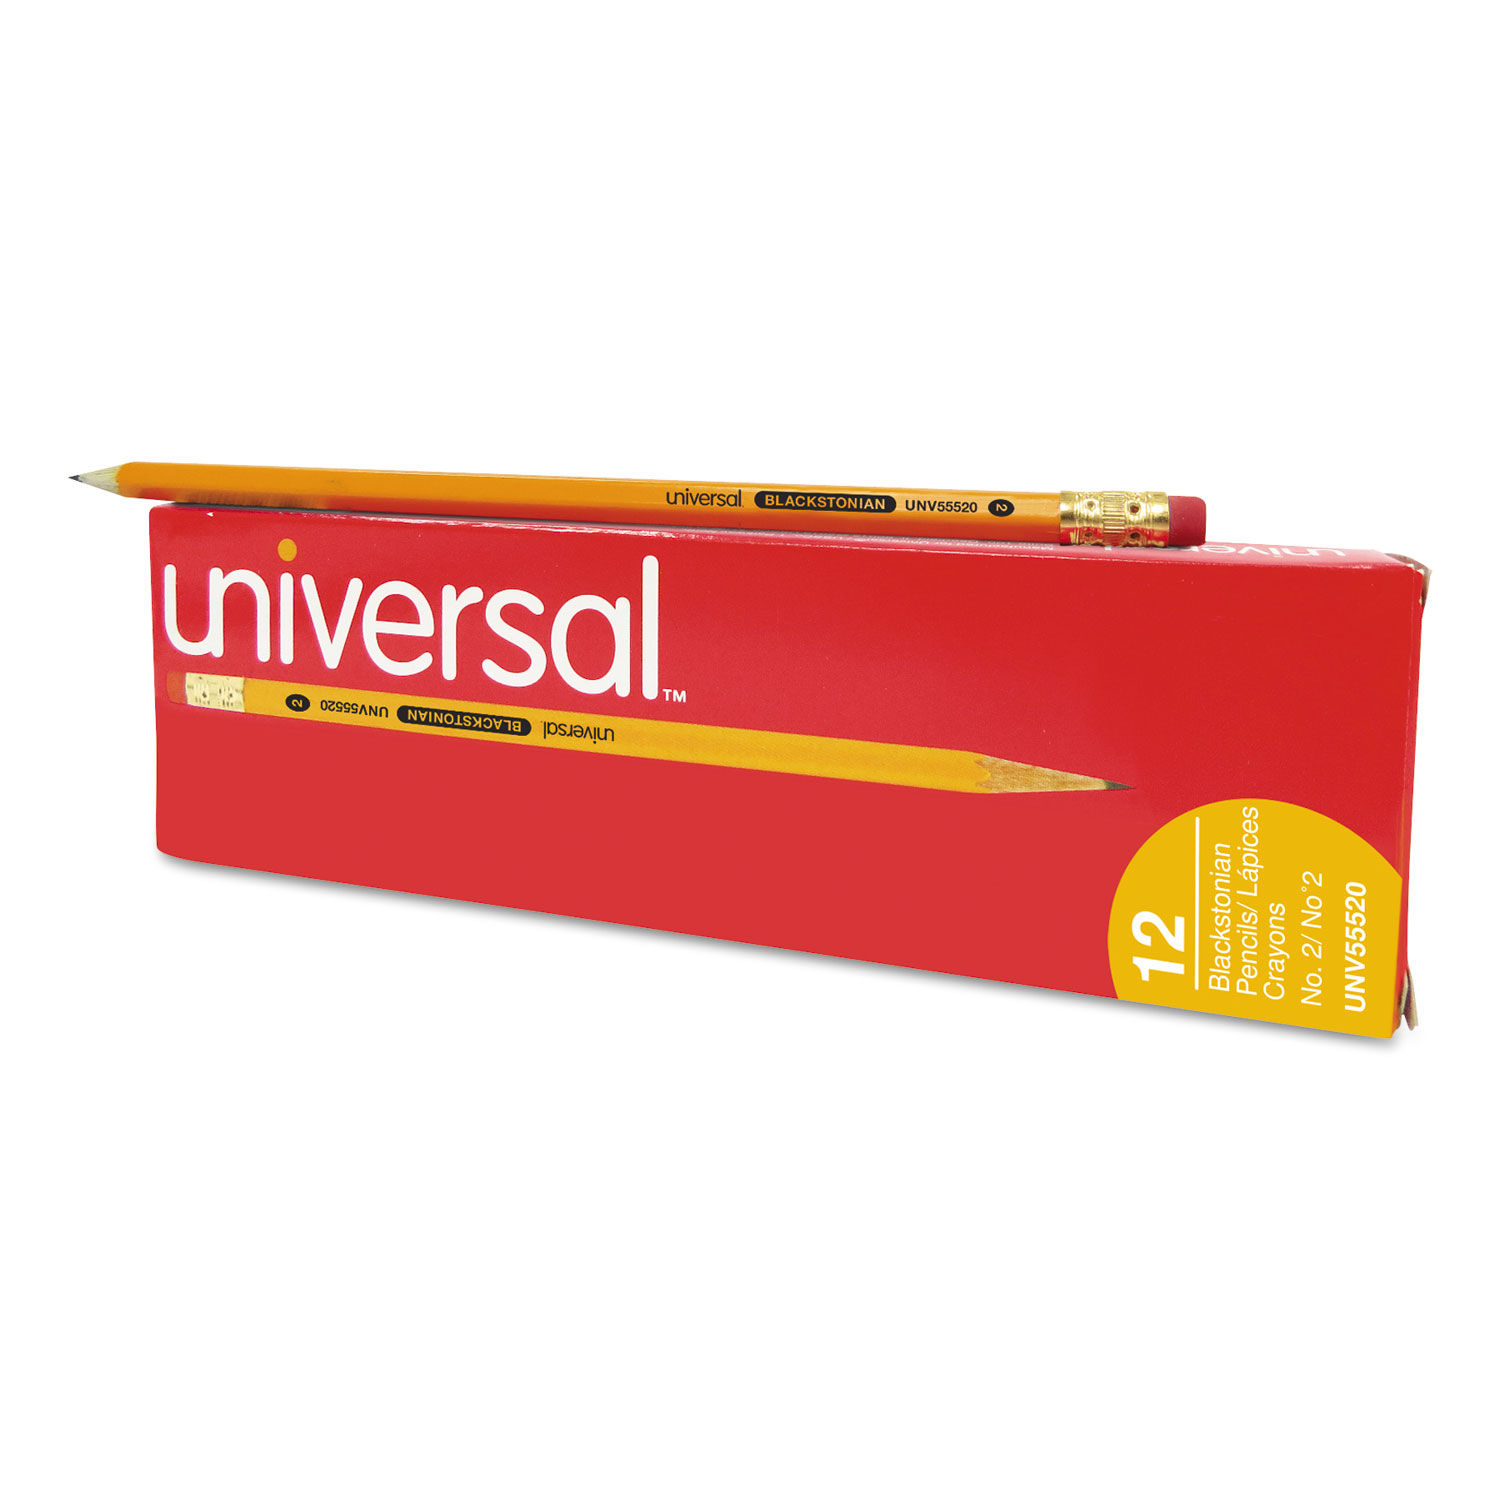  Universal UNV55520 Deluxe Blackstonian Pencil, HB (#2), Black Lead, Yellow Barrel, Dozen (UNV55520) 